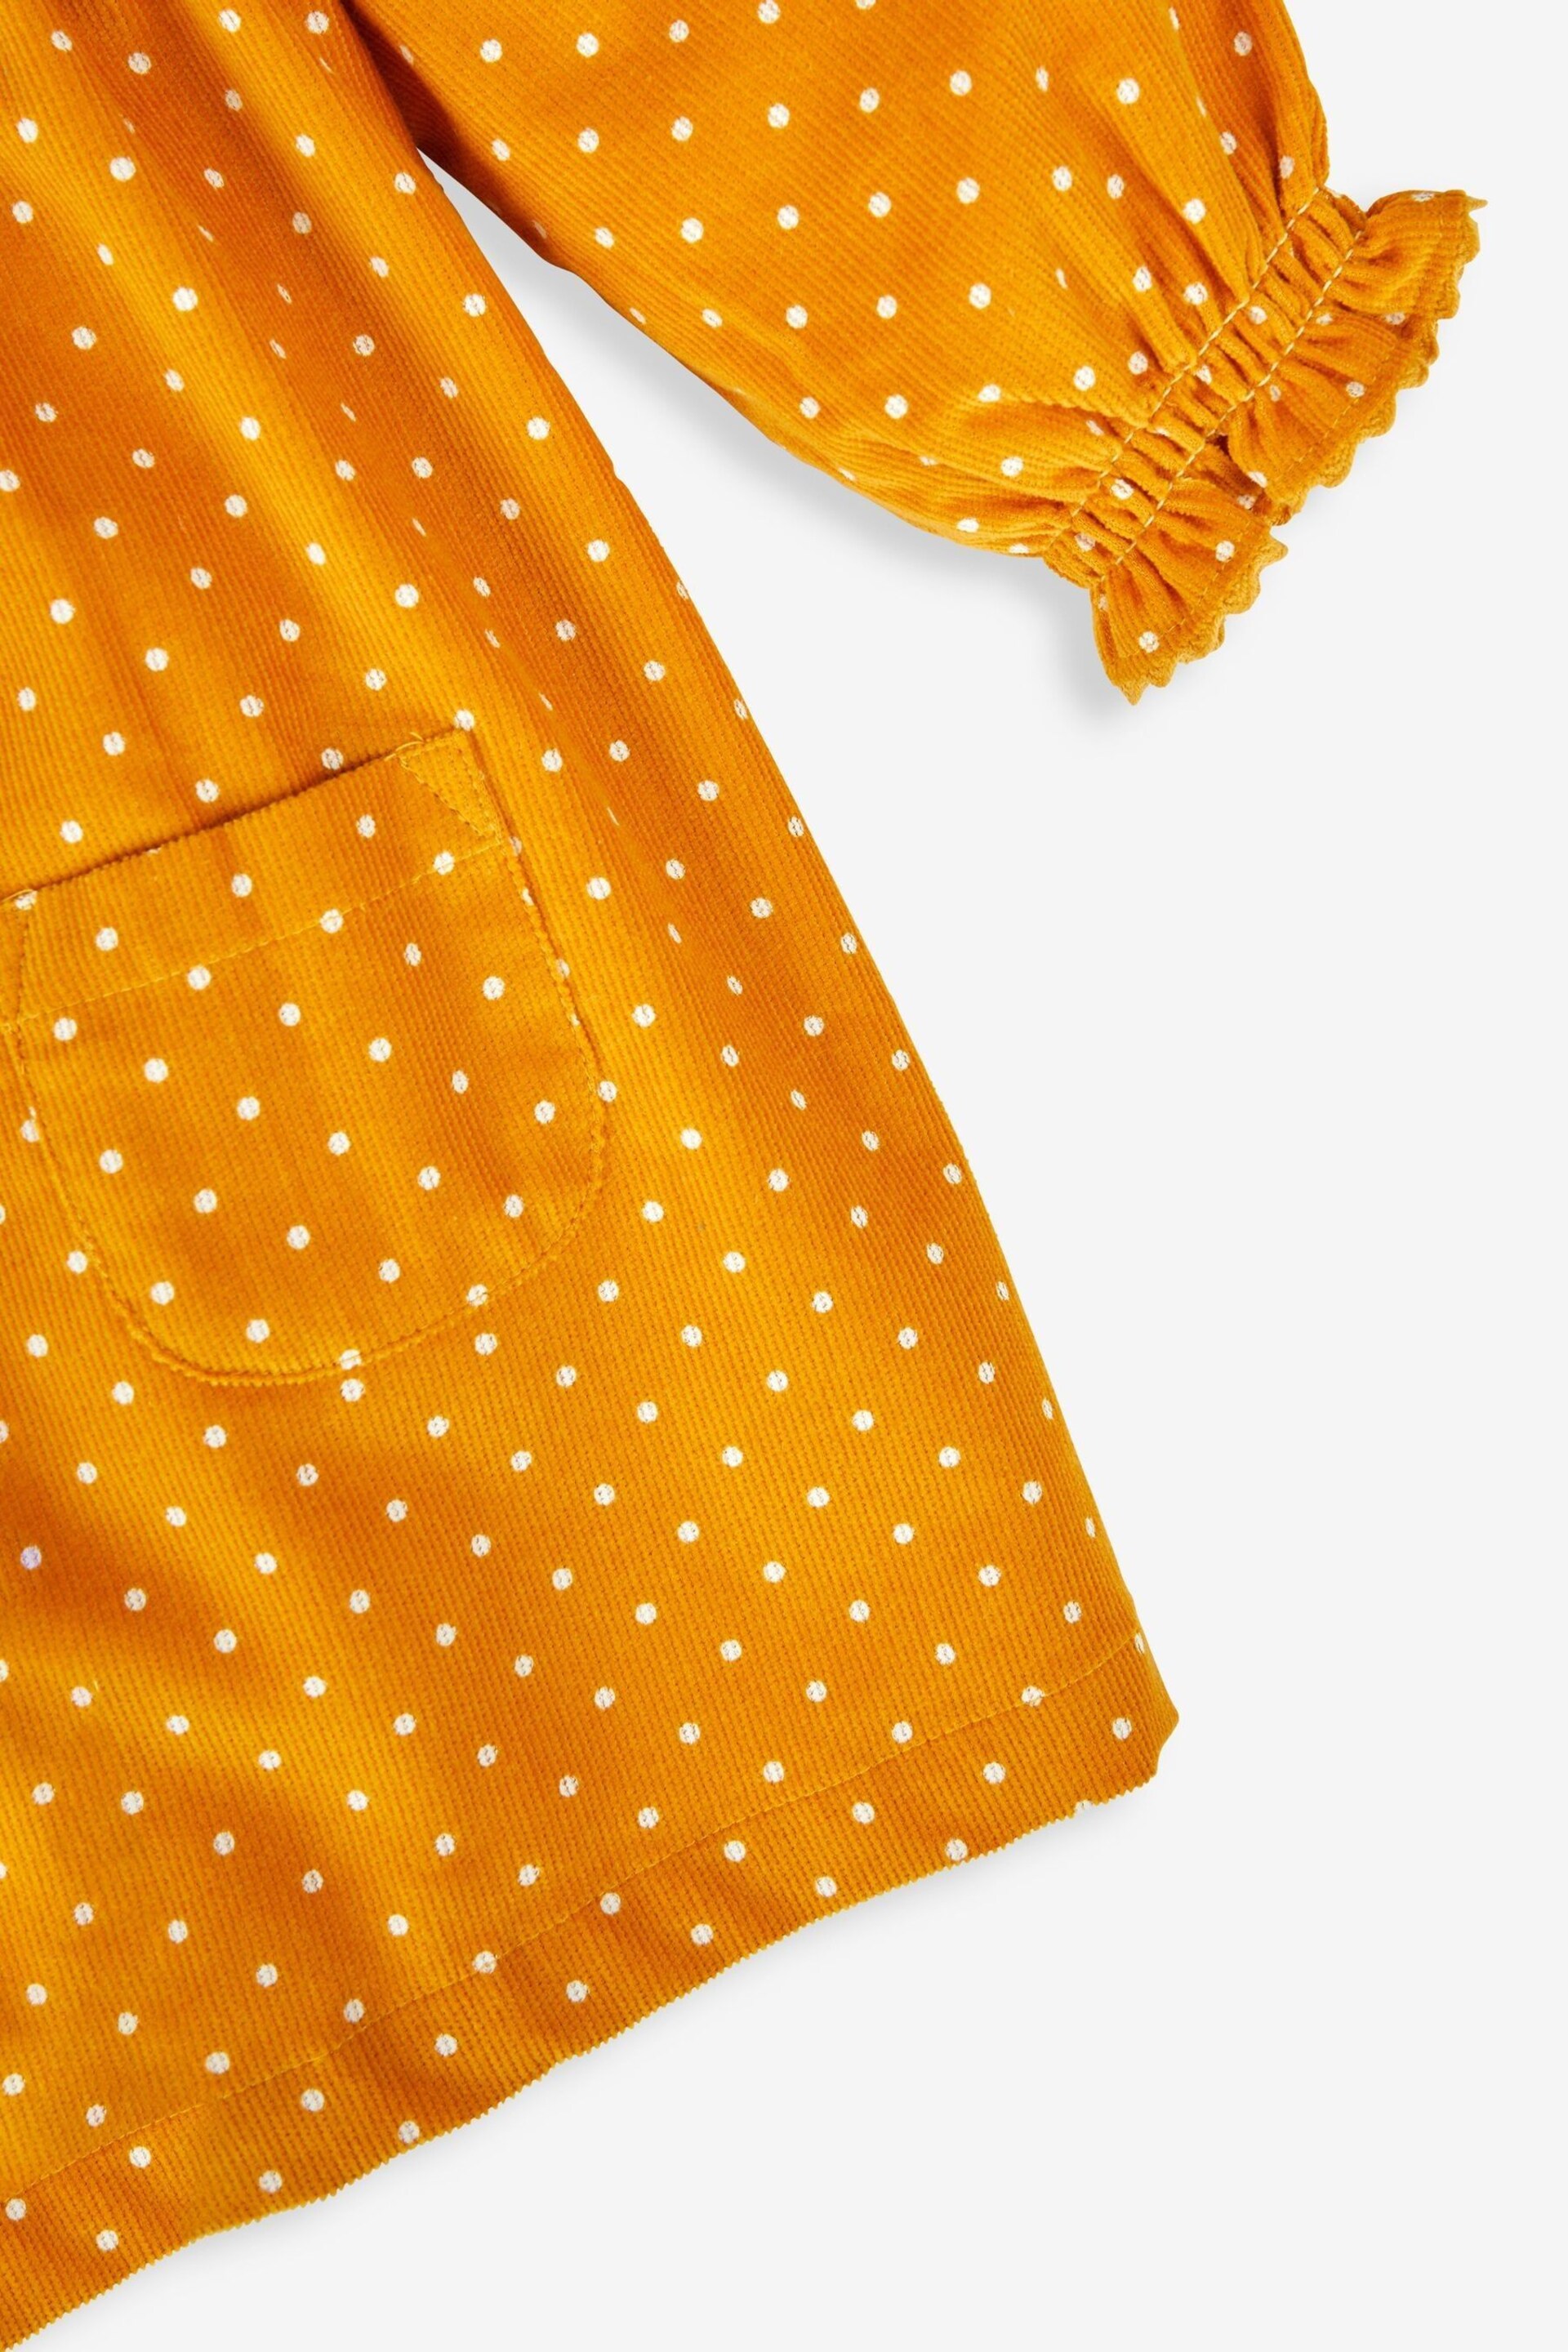 JoJo Maman Bébé Mustard Yellow Spot Classic Cord Shirt Dress - Image 3 of 3